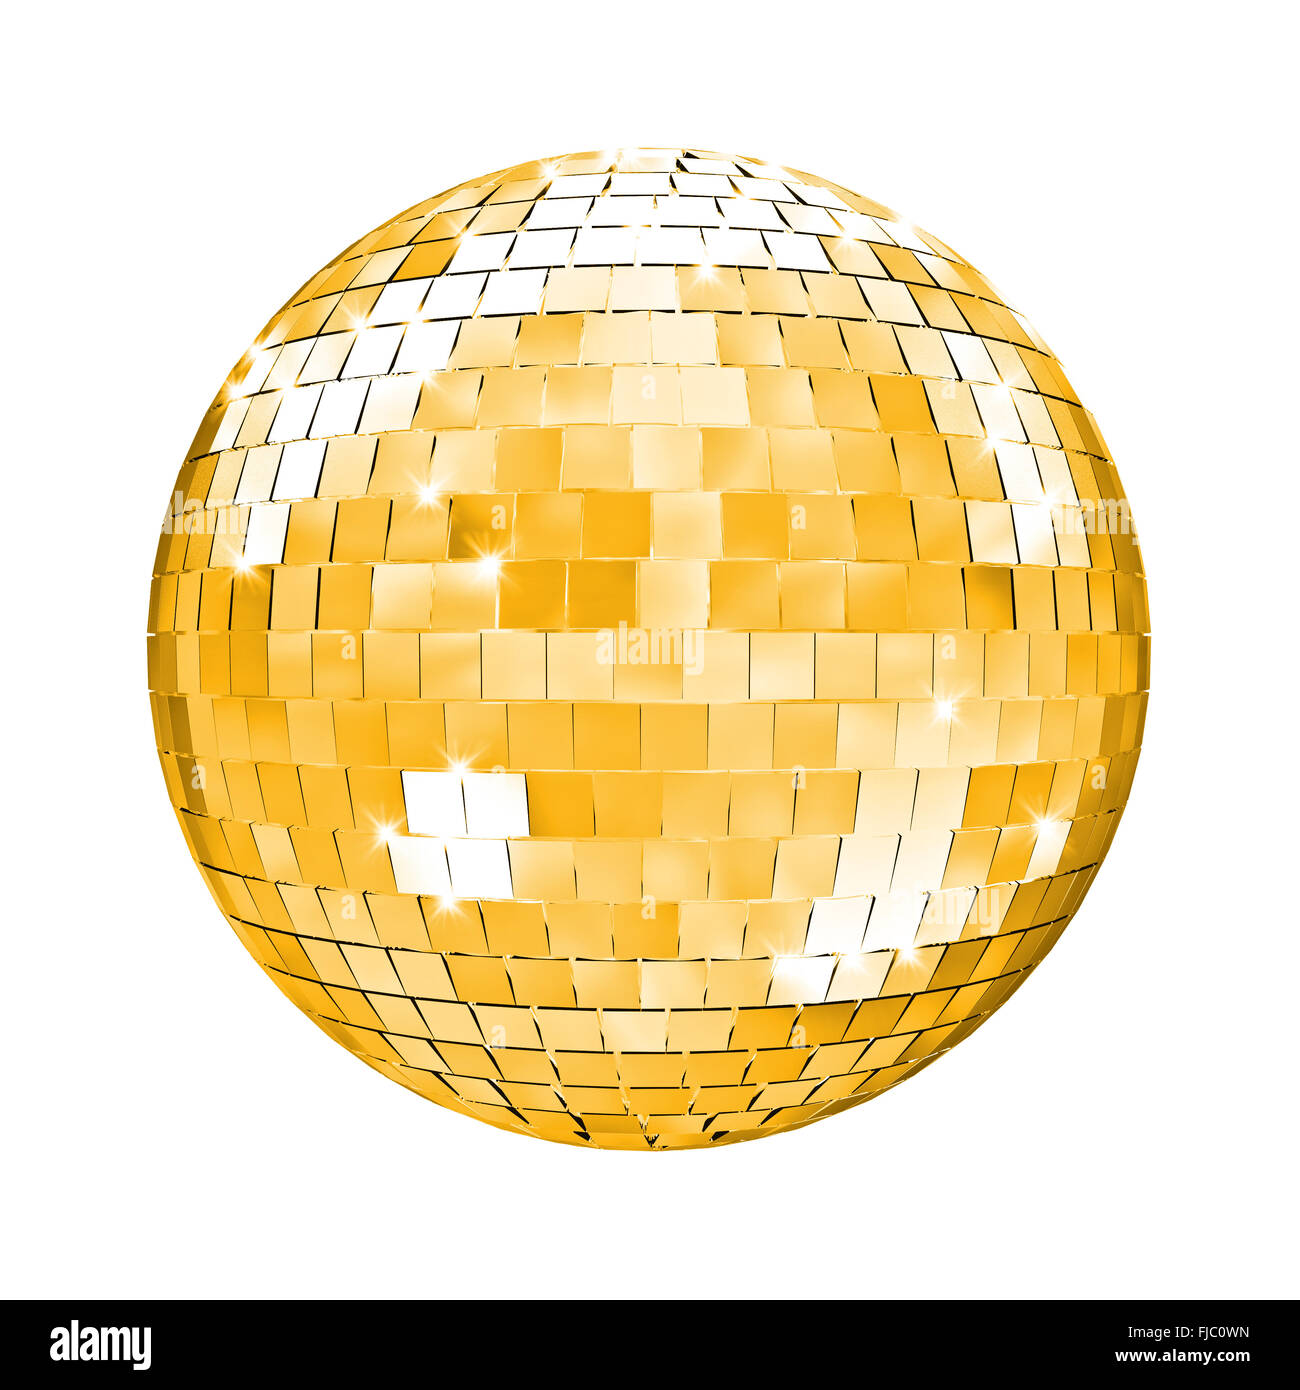 Gold disco disco ball Stock Photo by ©3dfoto 4132232